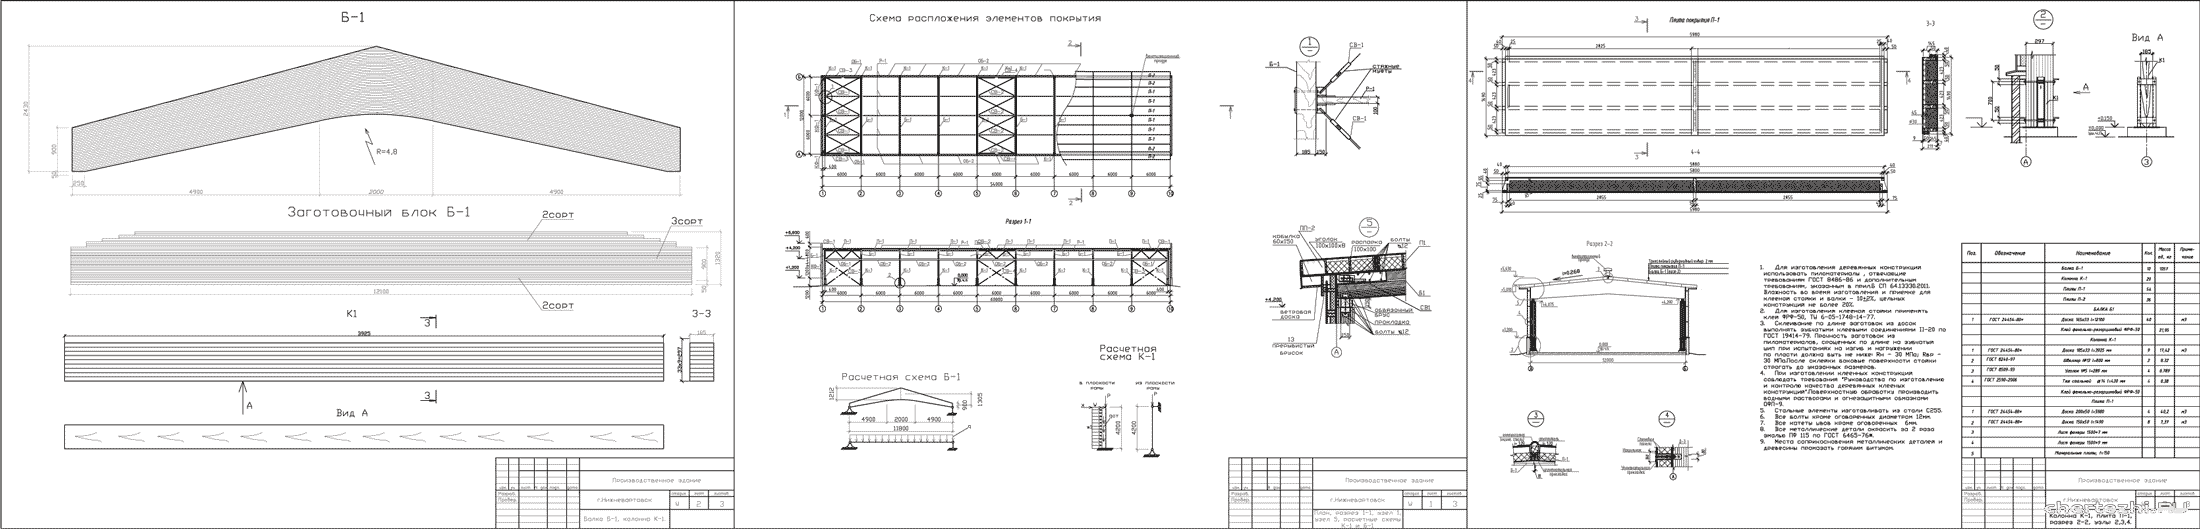 Курсовой проект - Проектирование и расчет несущих и ограждающих конструкций производственного здания из дерева